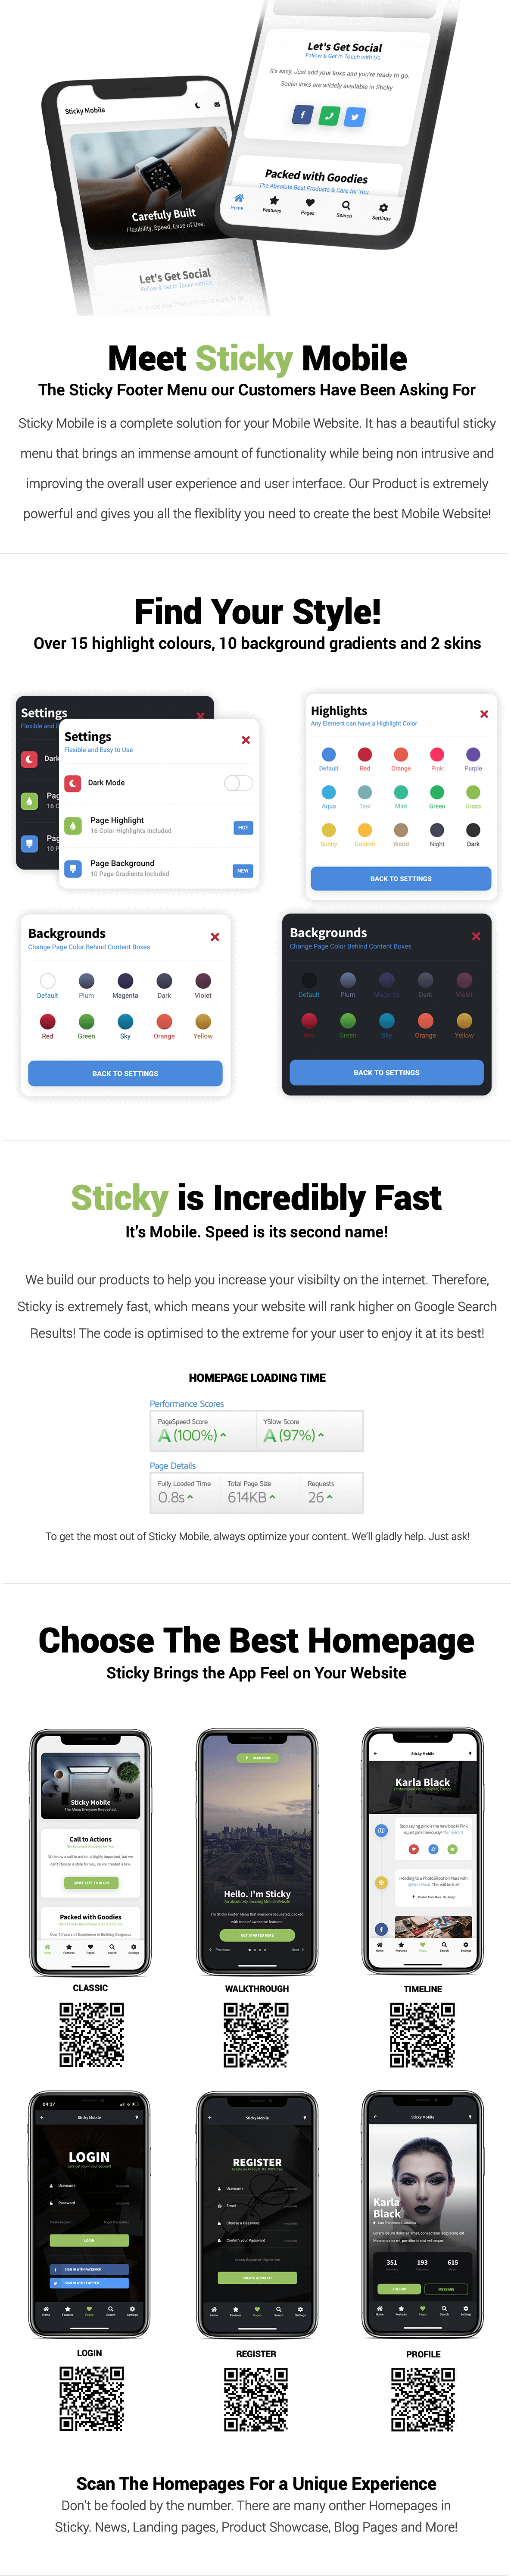 Sticky Mobile - 9